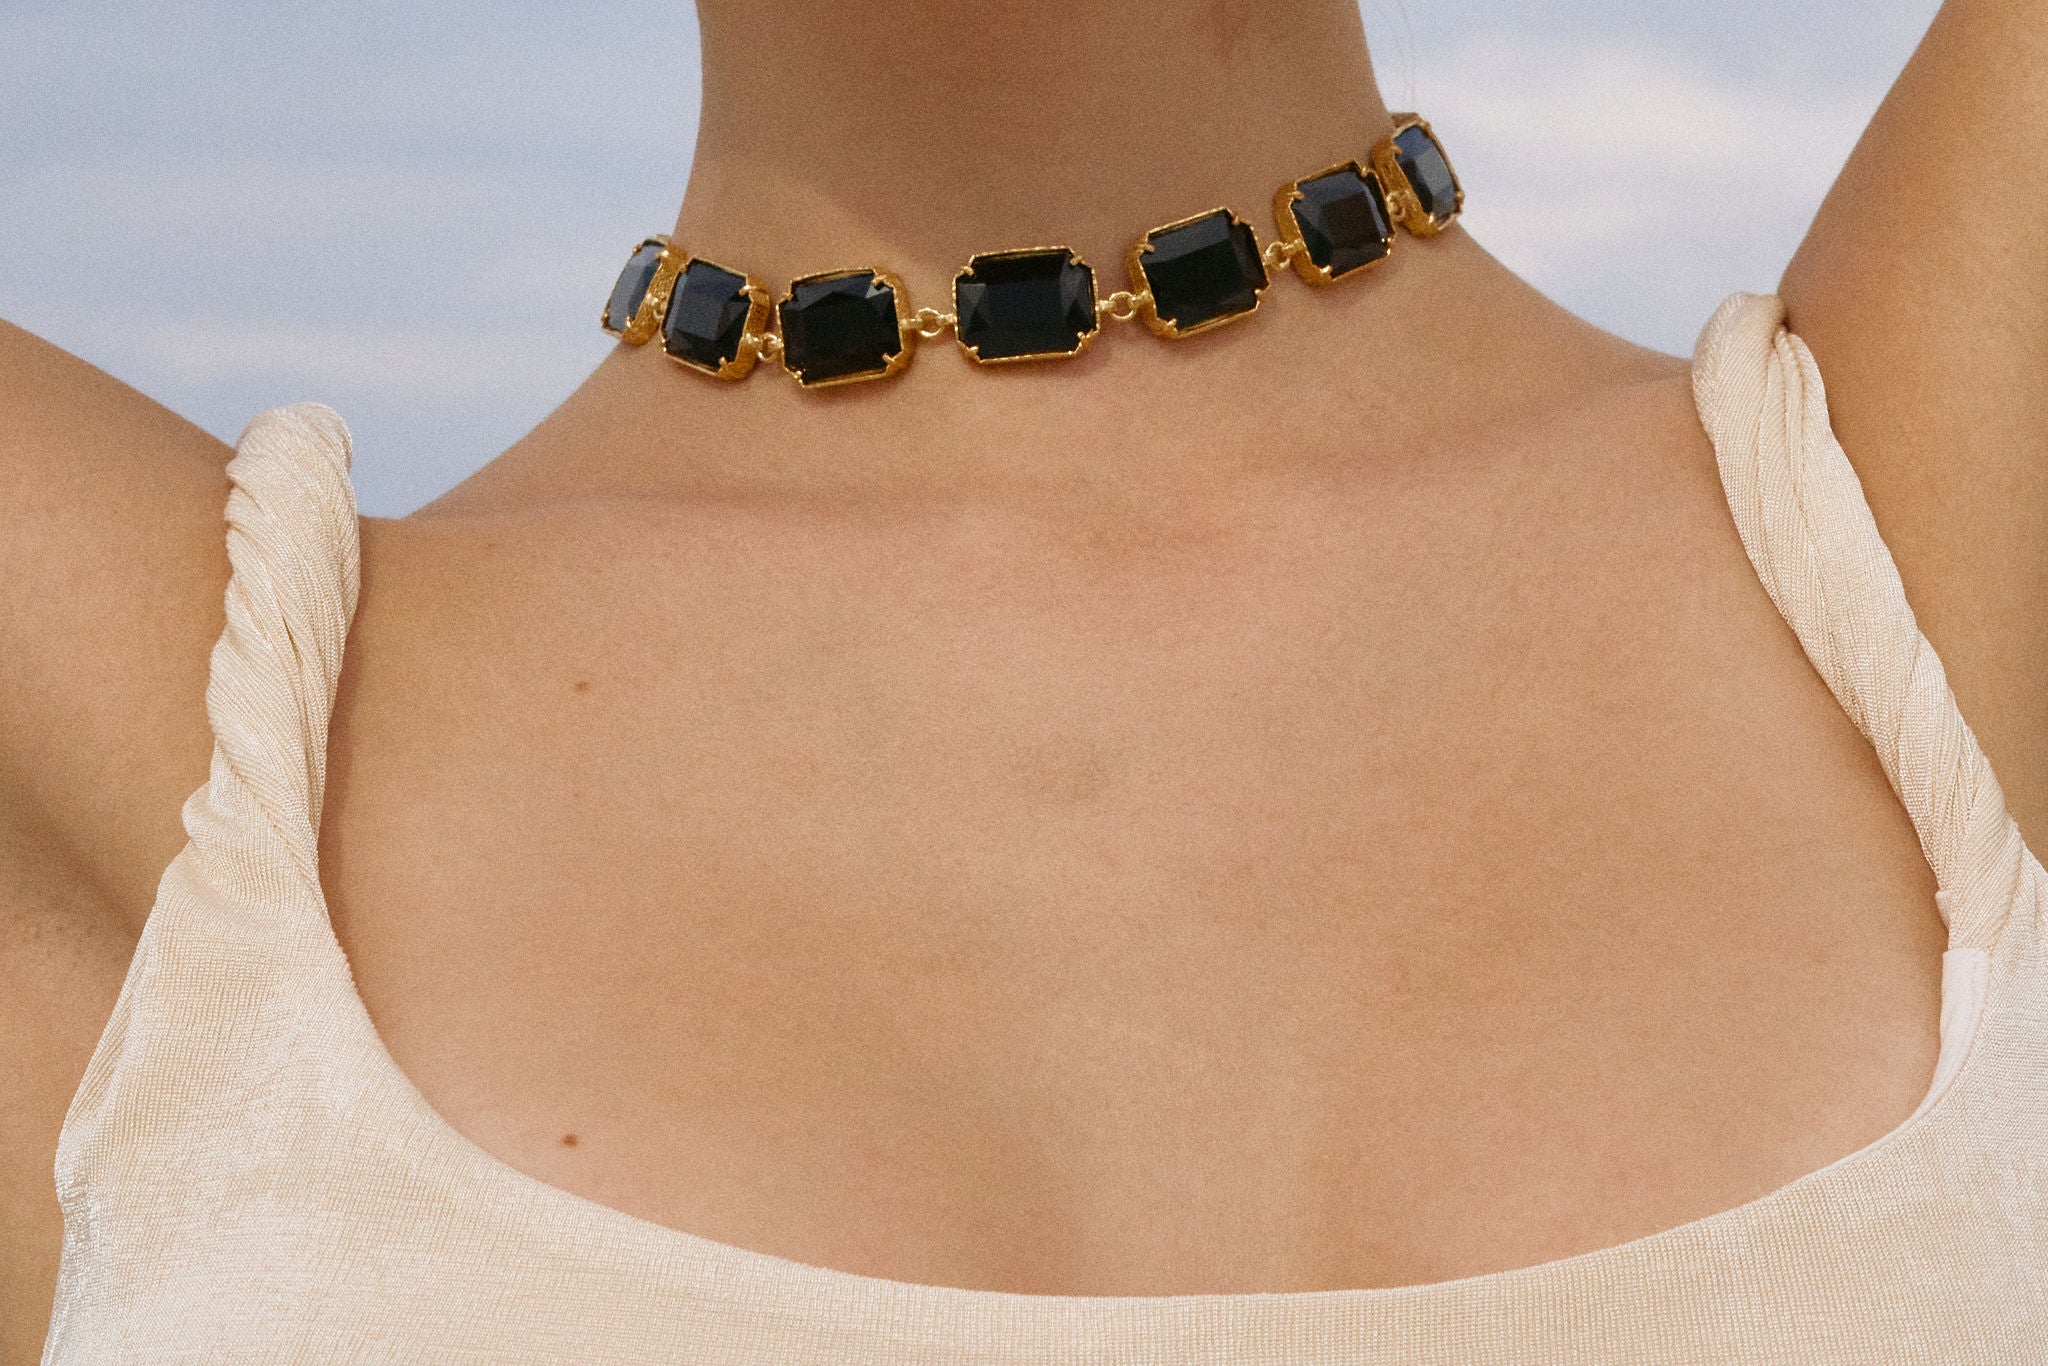 Belaflore Necklace Black